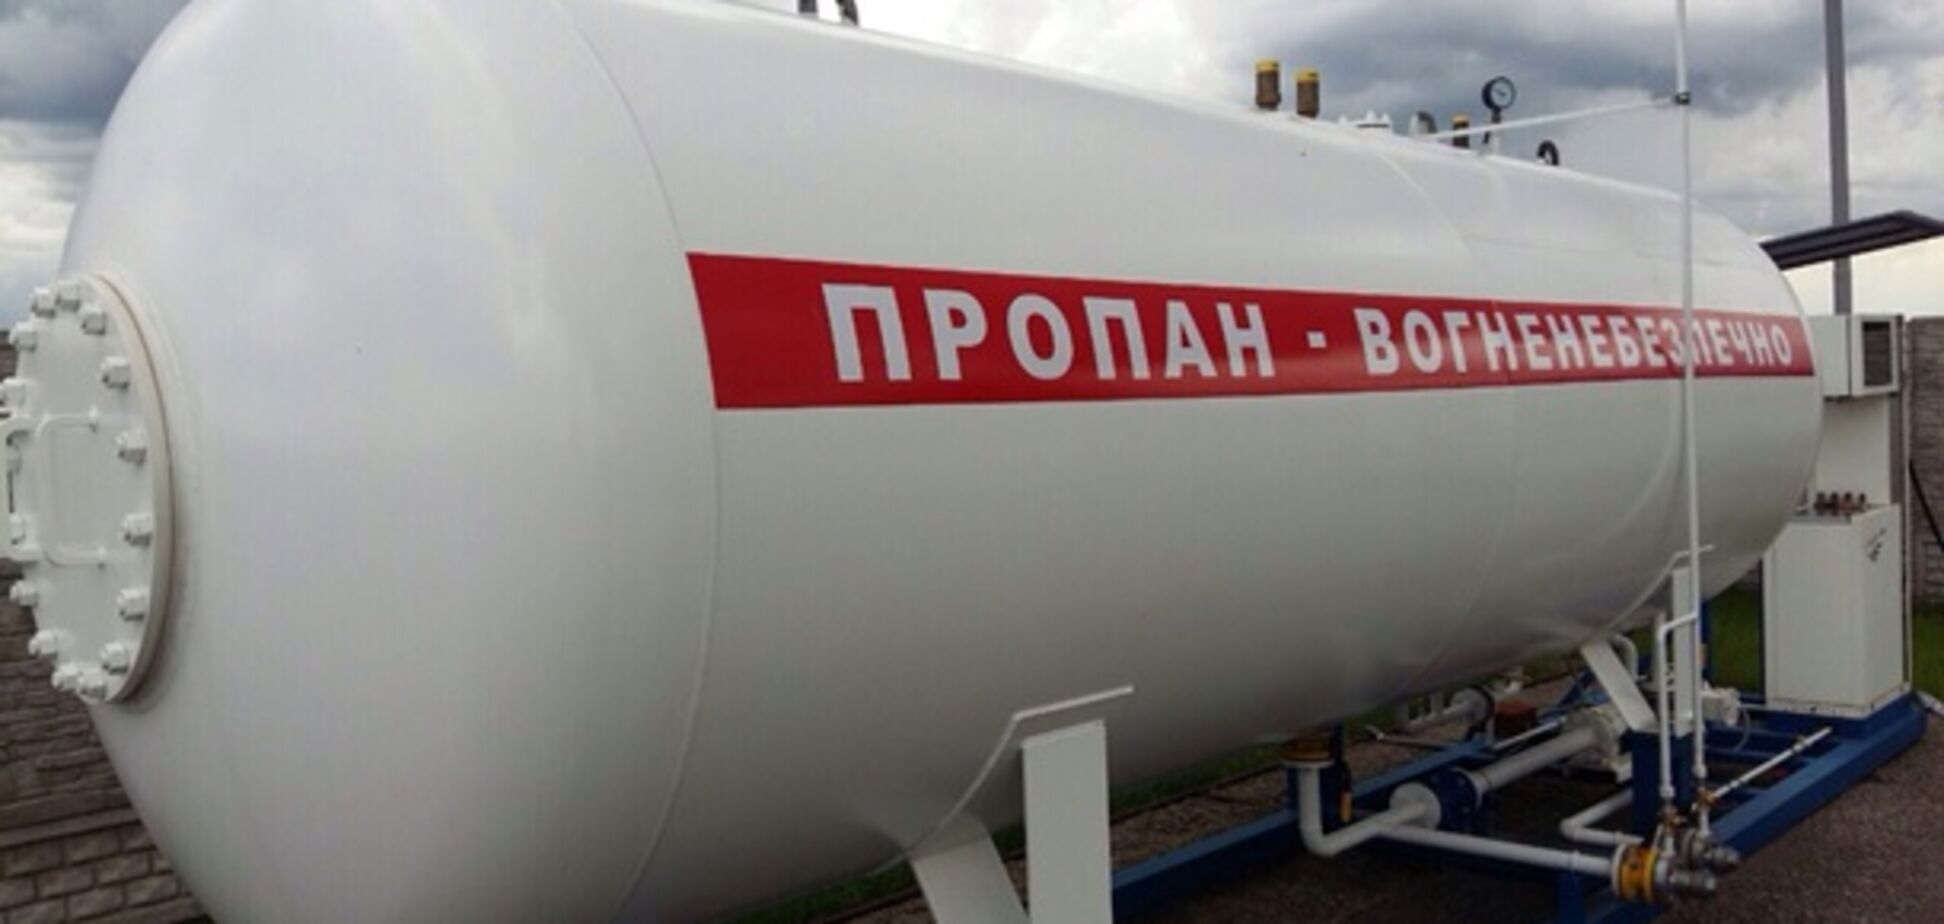 Ціни на газ в Україні